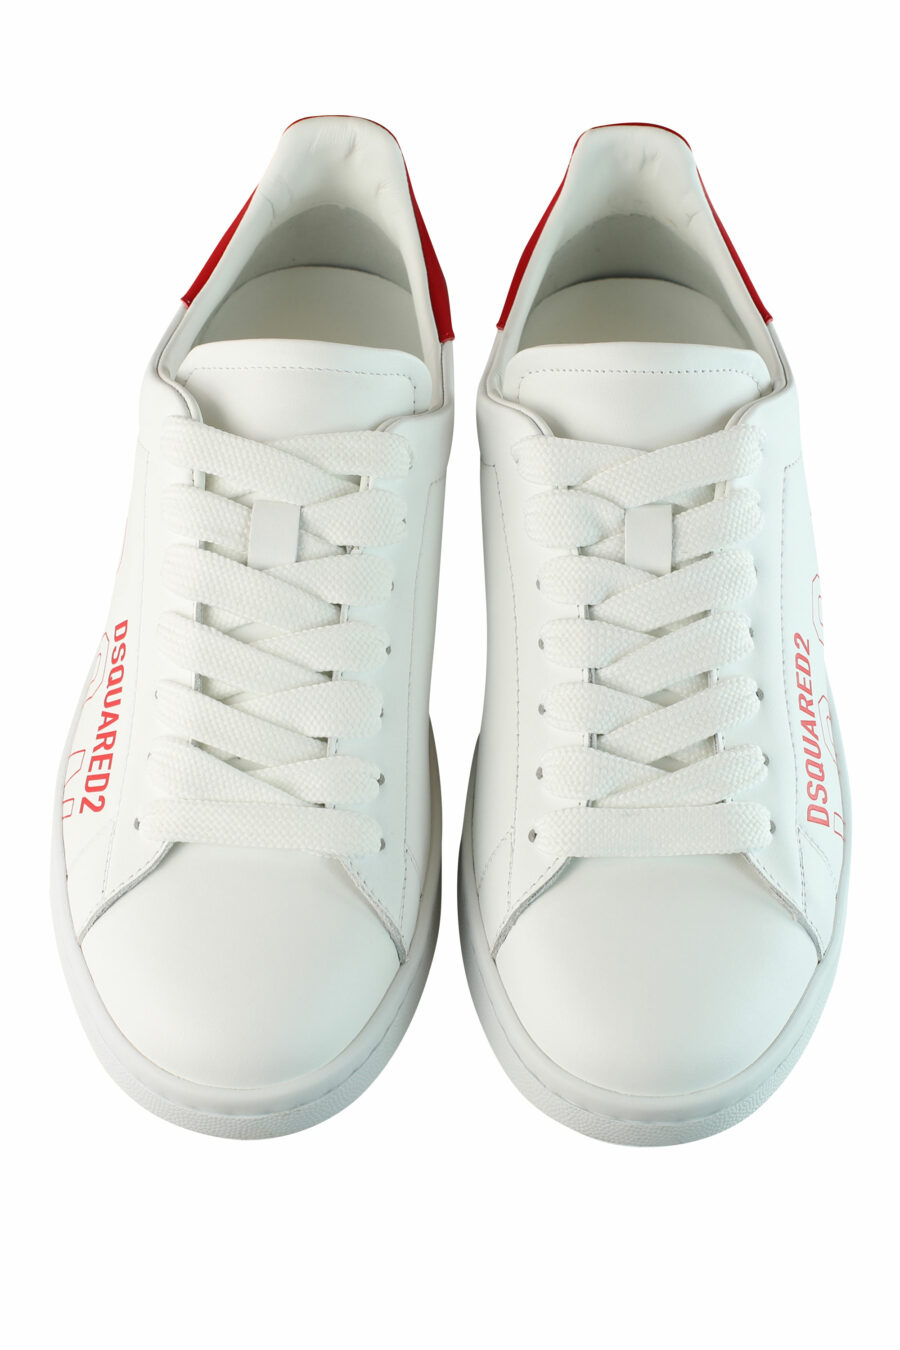 Zapatillas blancas "boxer" con detalles rojos y logo diagonal en contorno - IMG 1461